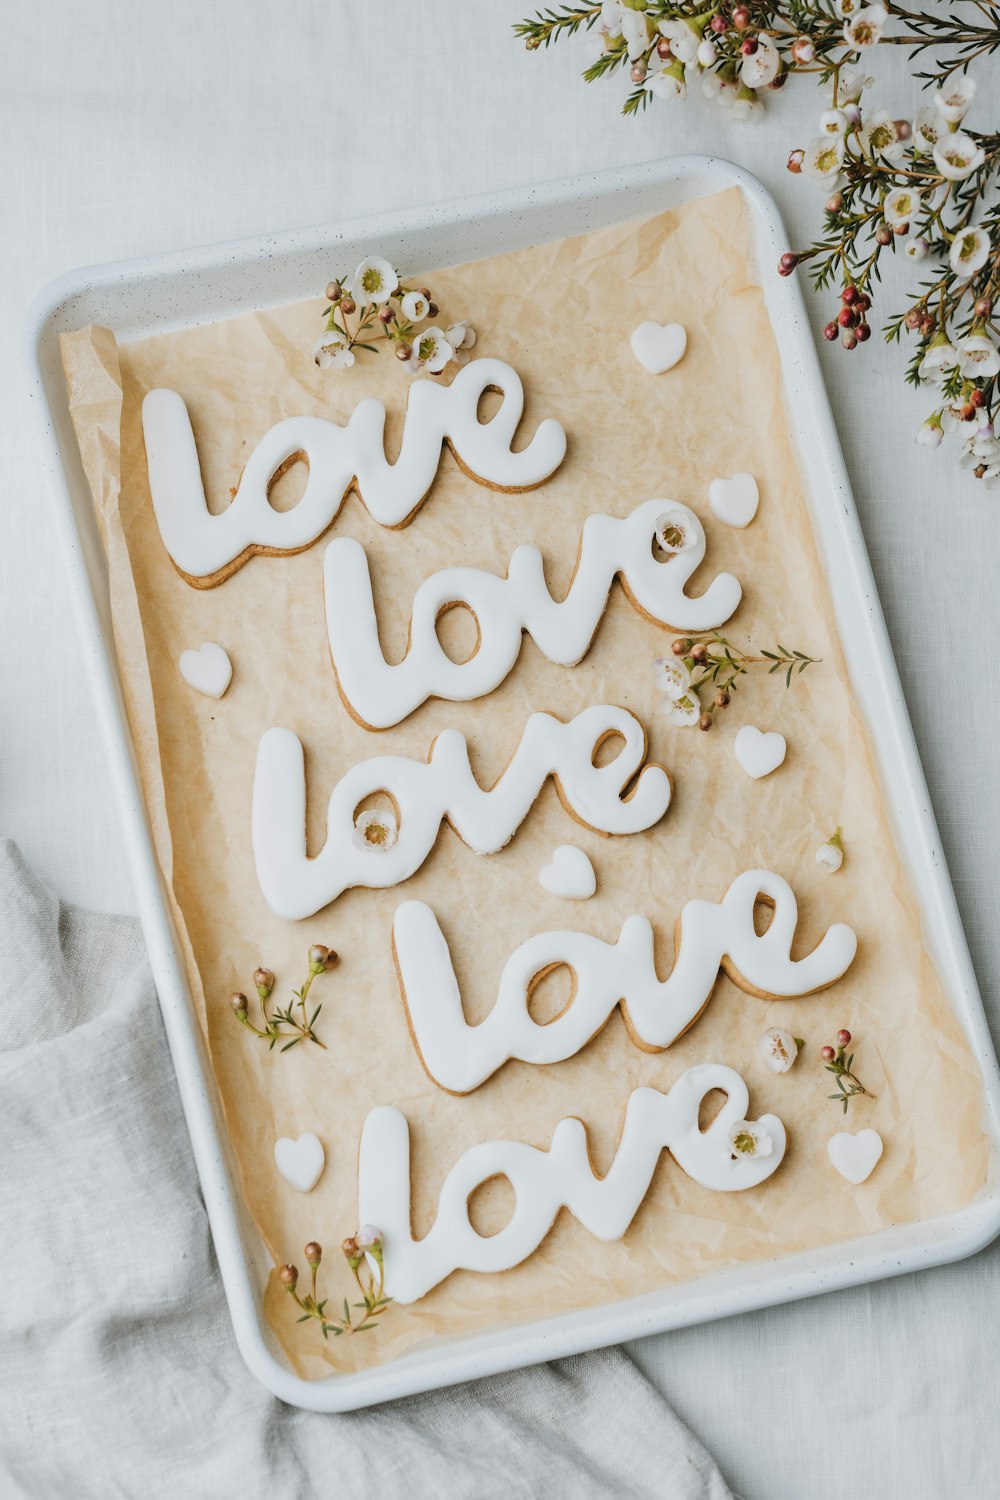 un biscuit avec les mots amour épelés dessus